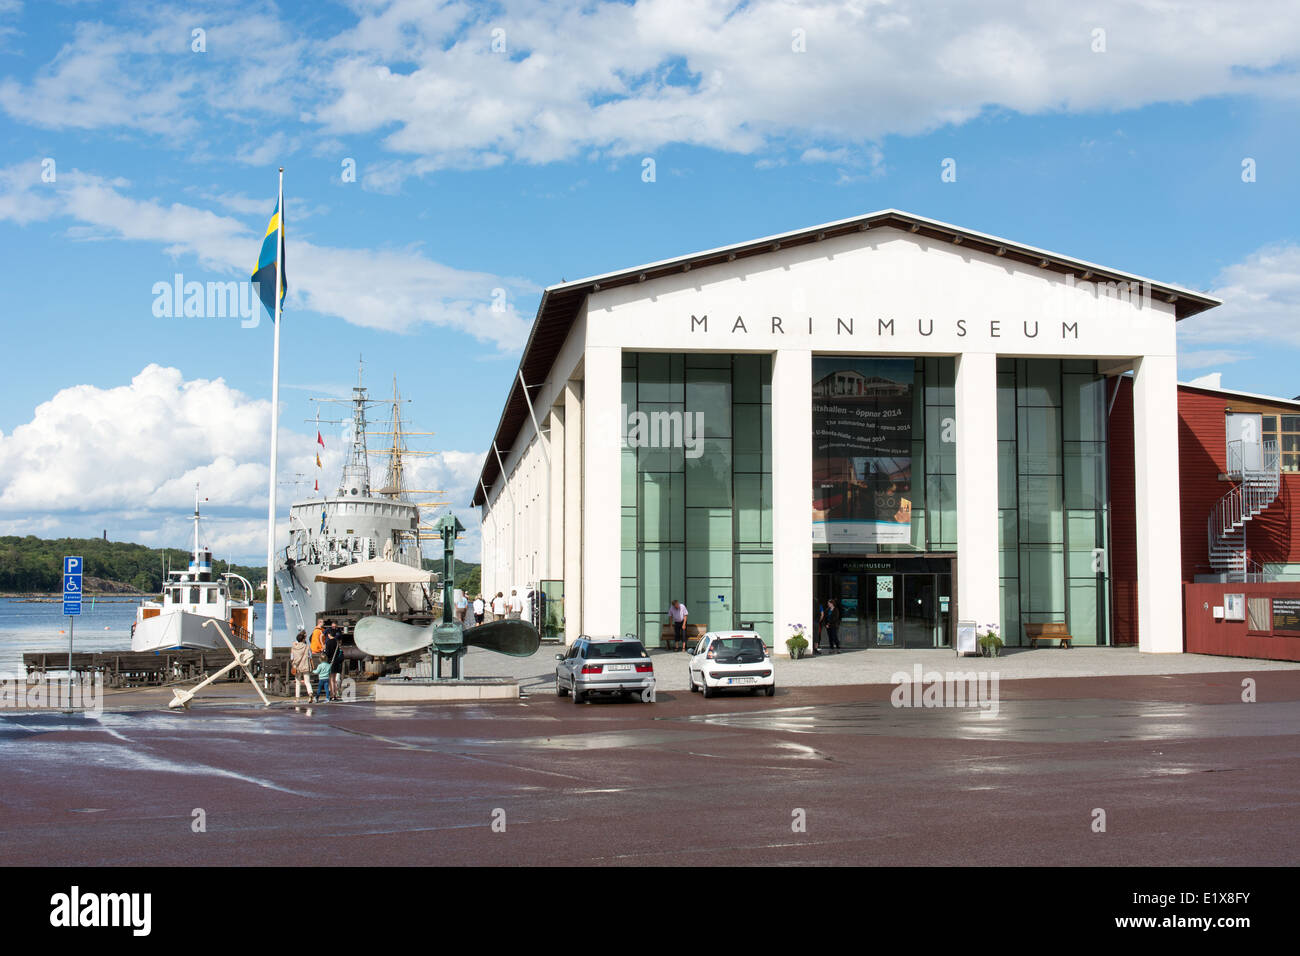 Marinmuseum o museo naval en Karlskrona, Suecia, en un día lluvioso Foto de stock